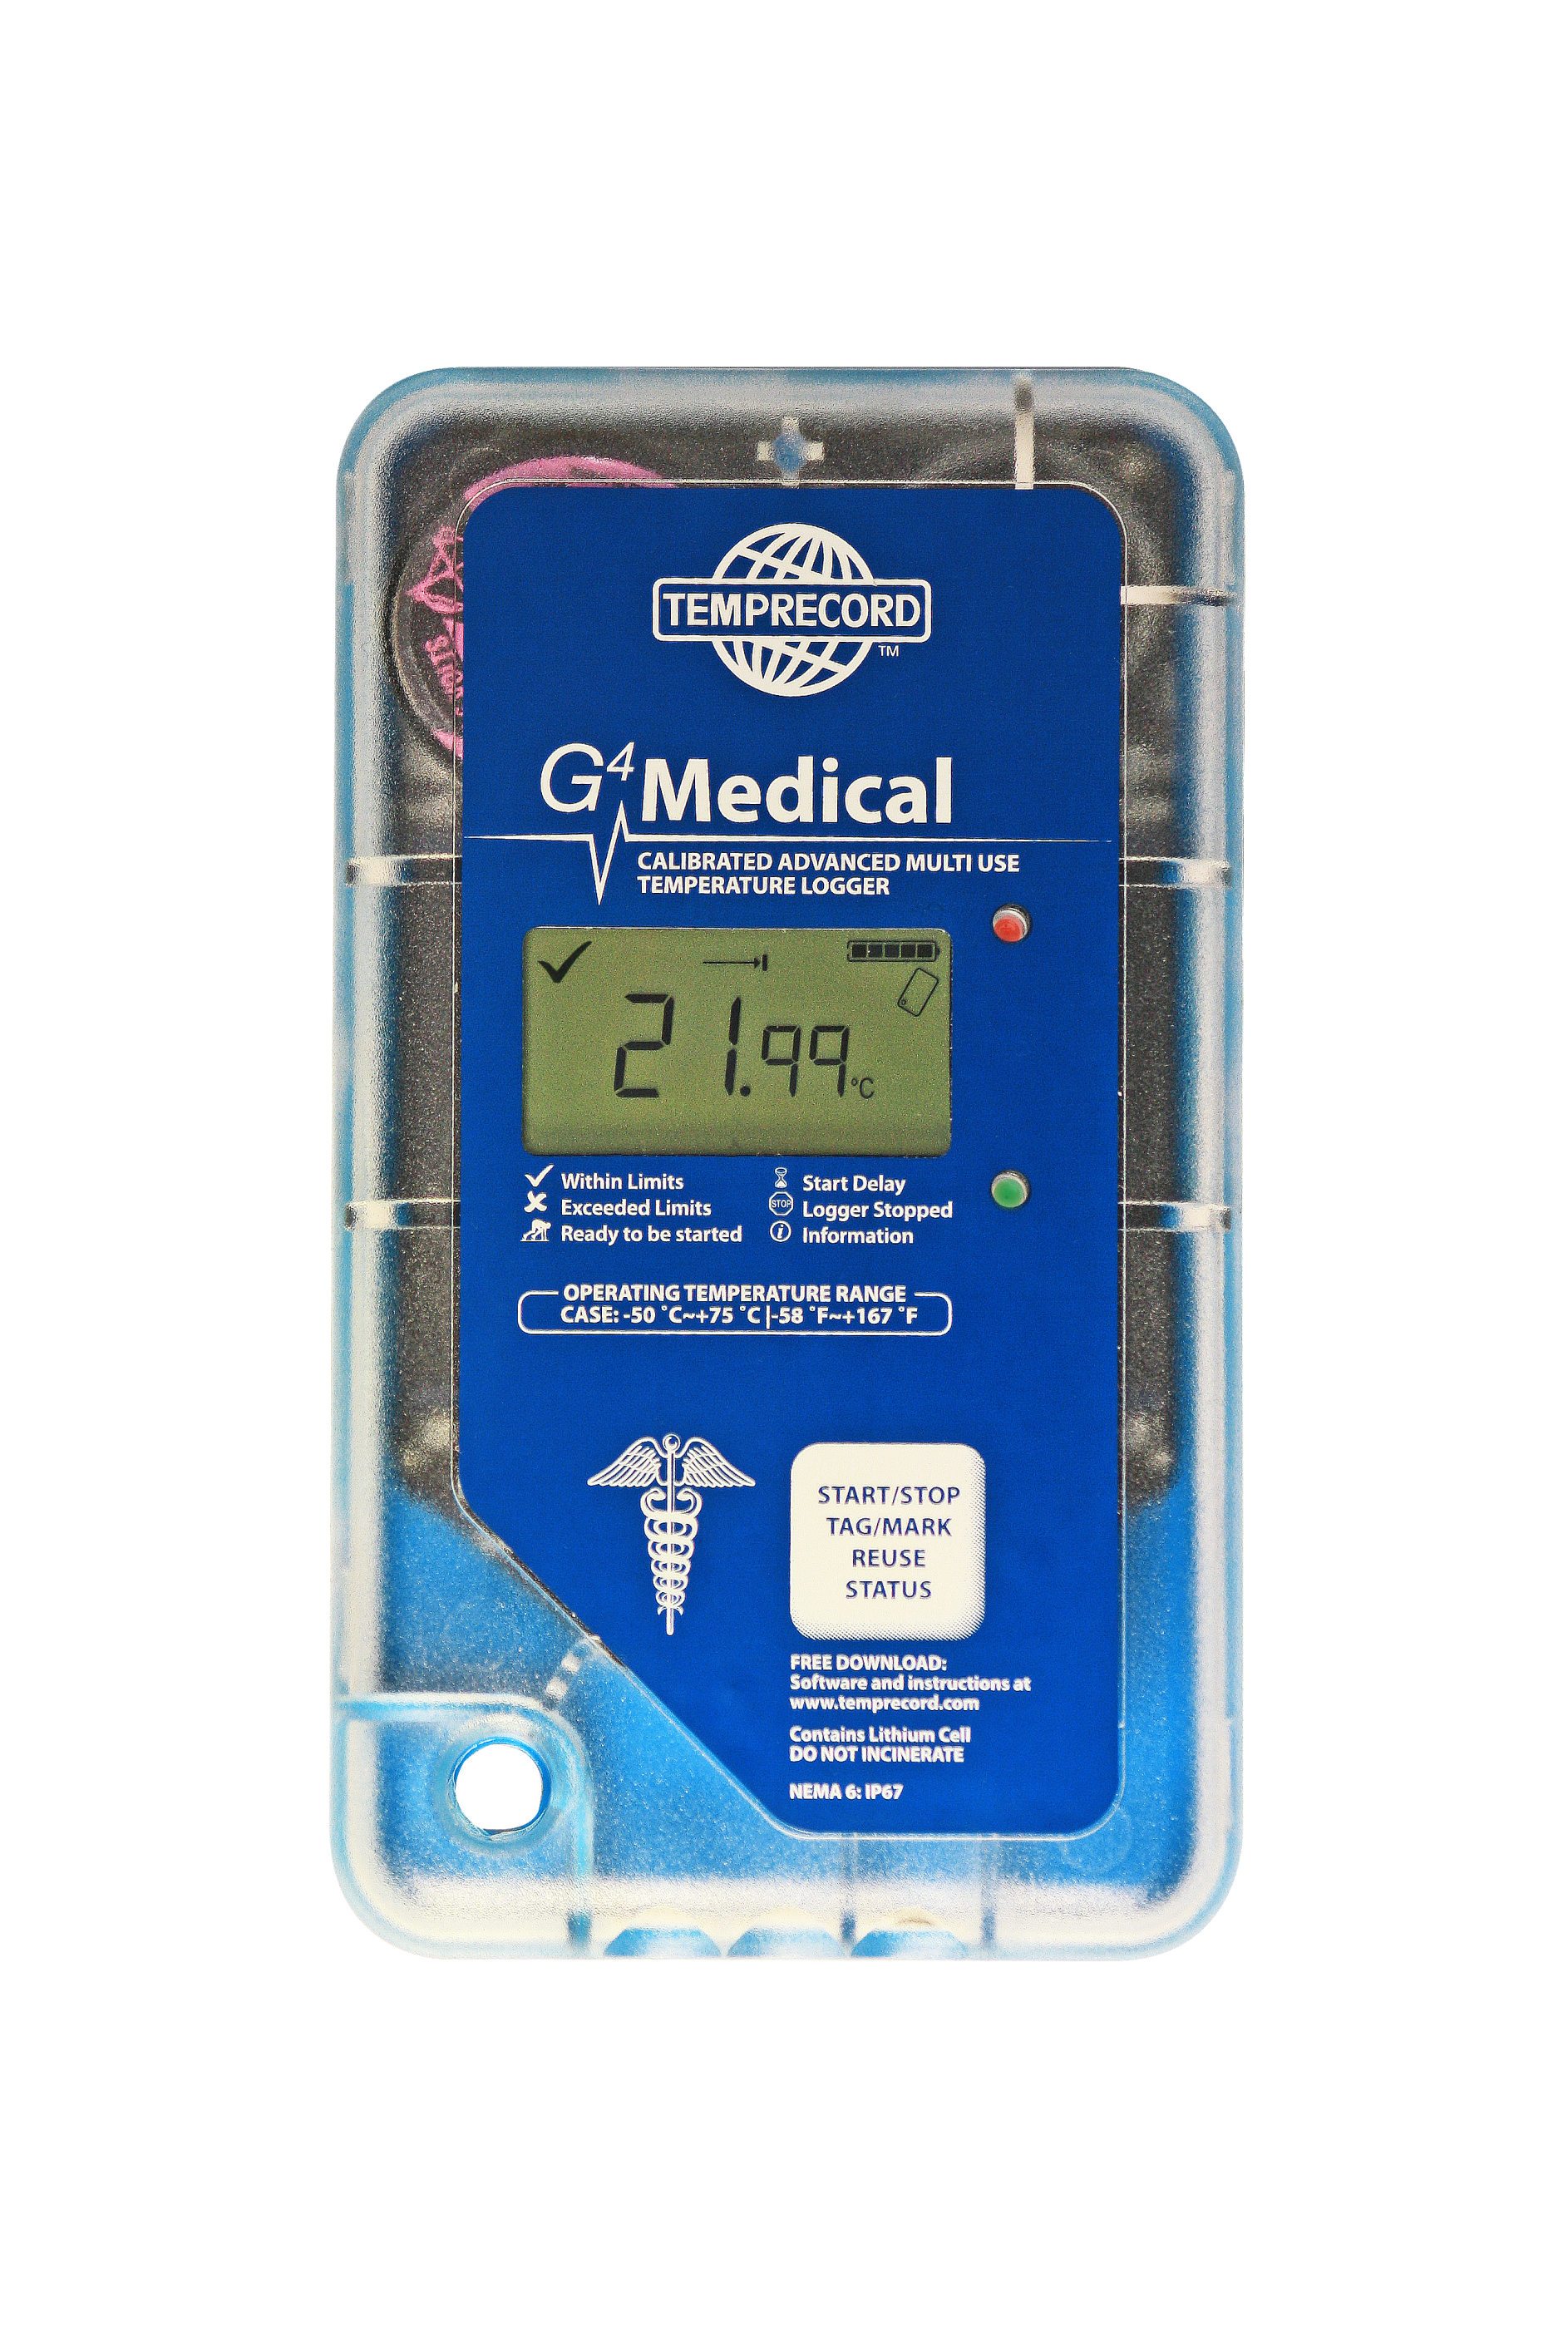 G4 Medical Data Logger